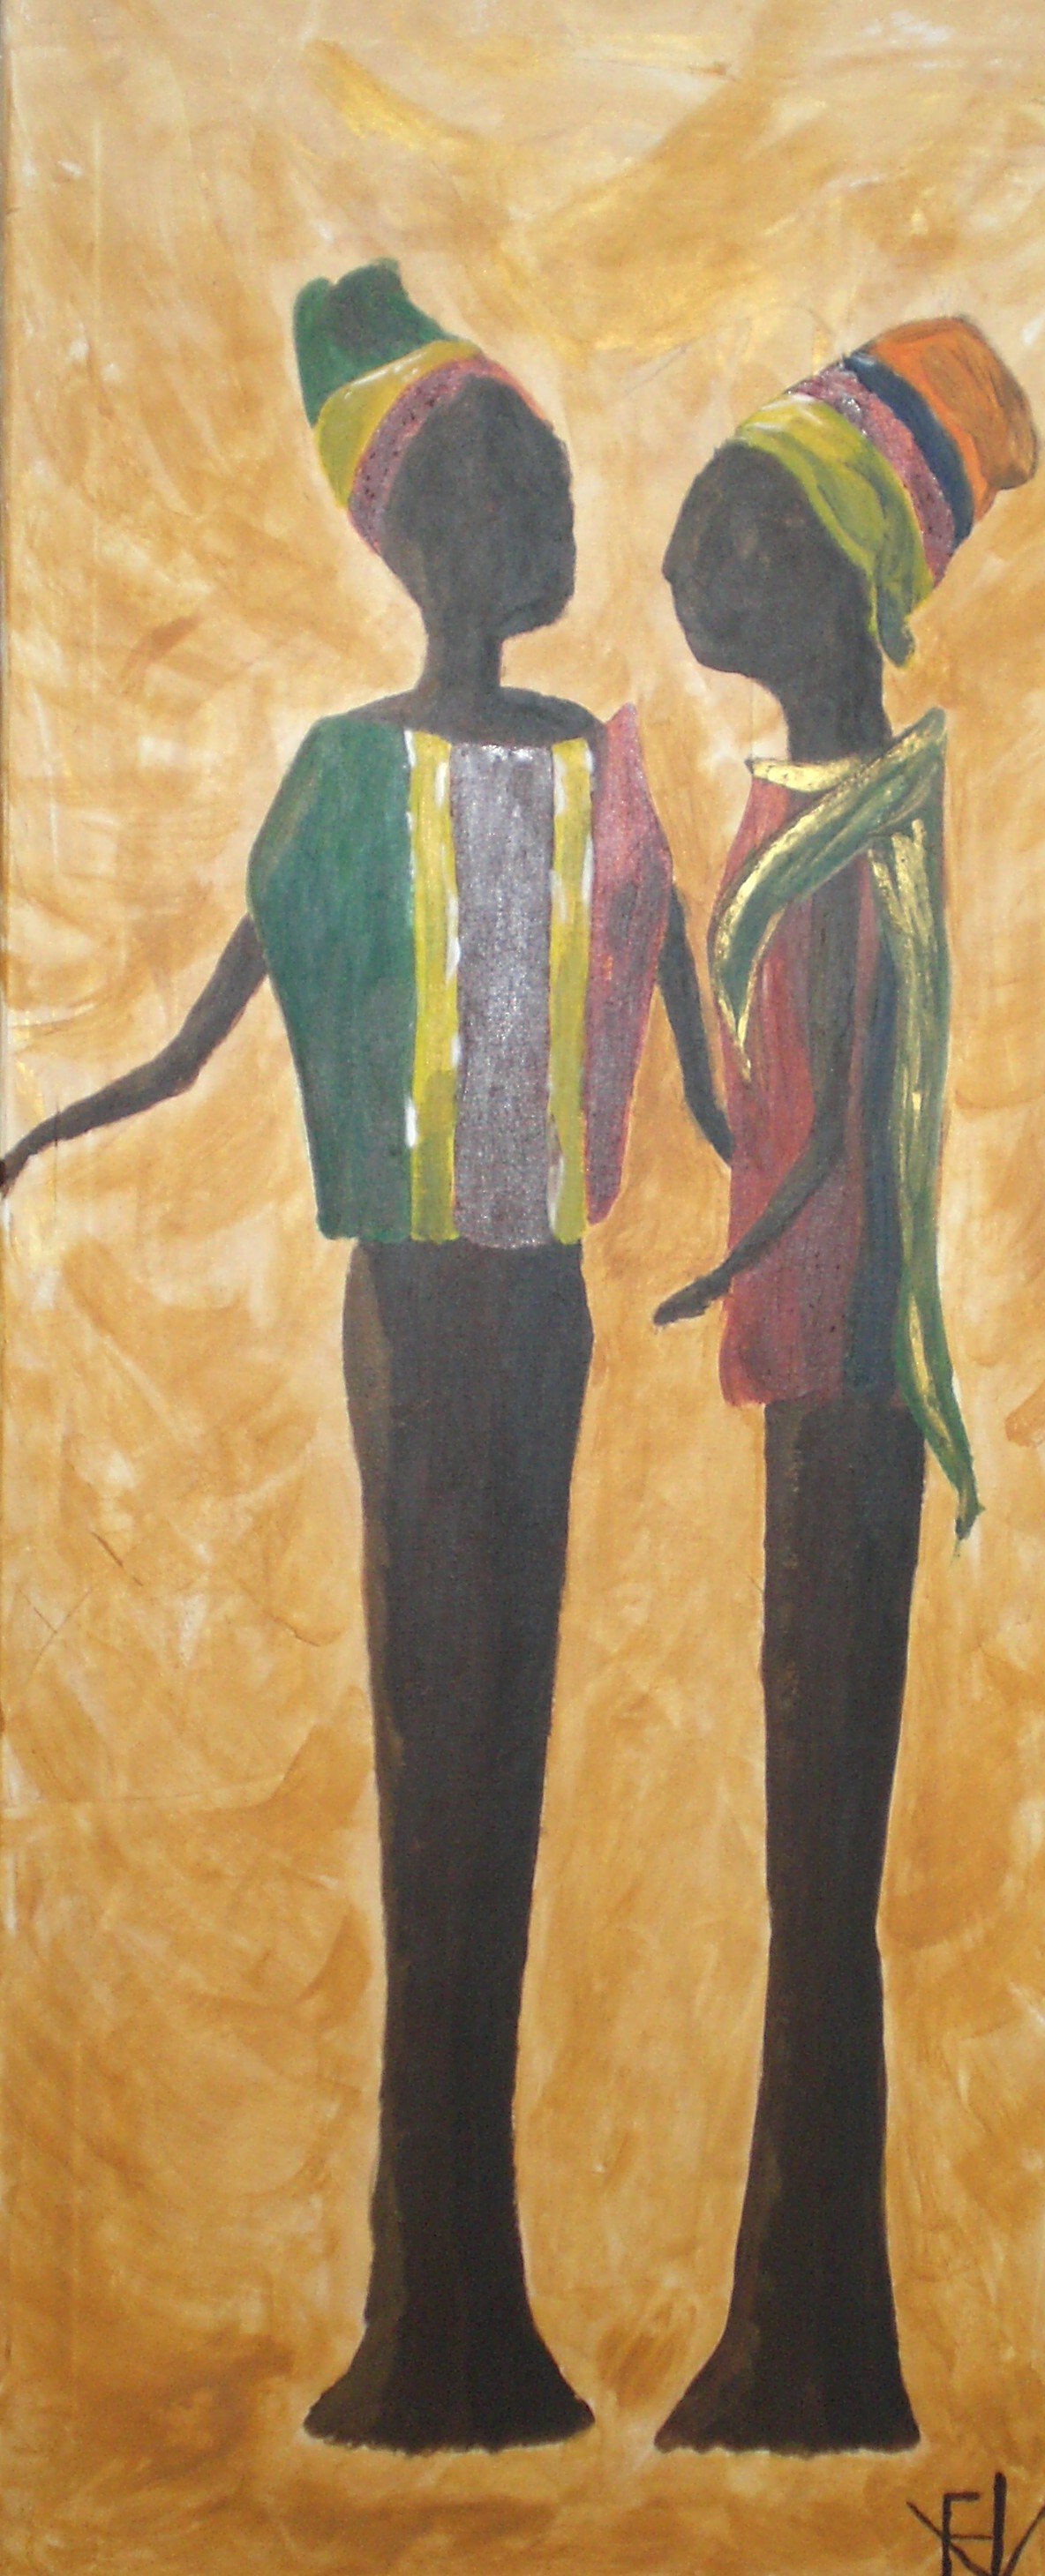 beelden in de zon, acryl op linnen, 50x100, 2008, verkocht, sold, FHV-kunst, francina van 't veld